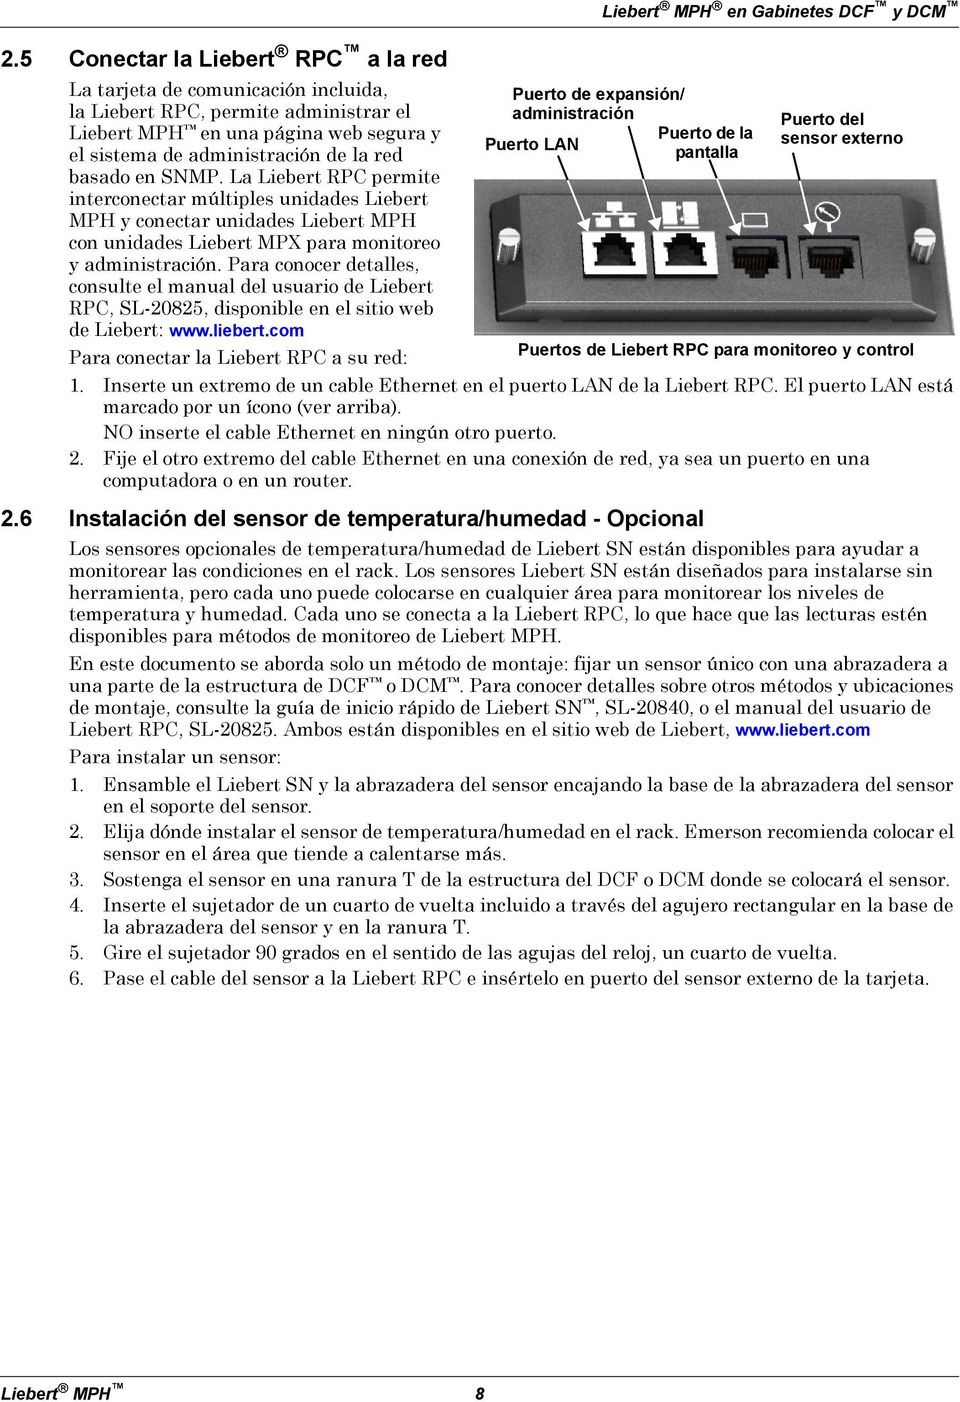 Para conocer detalles, consulte el manual del usuario de Liebert RPC, SL-20825, disponible en el sitio web de Liebert: www.liebert.